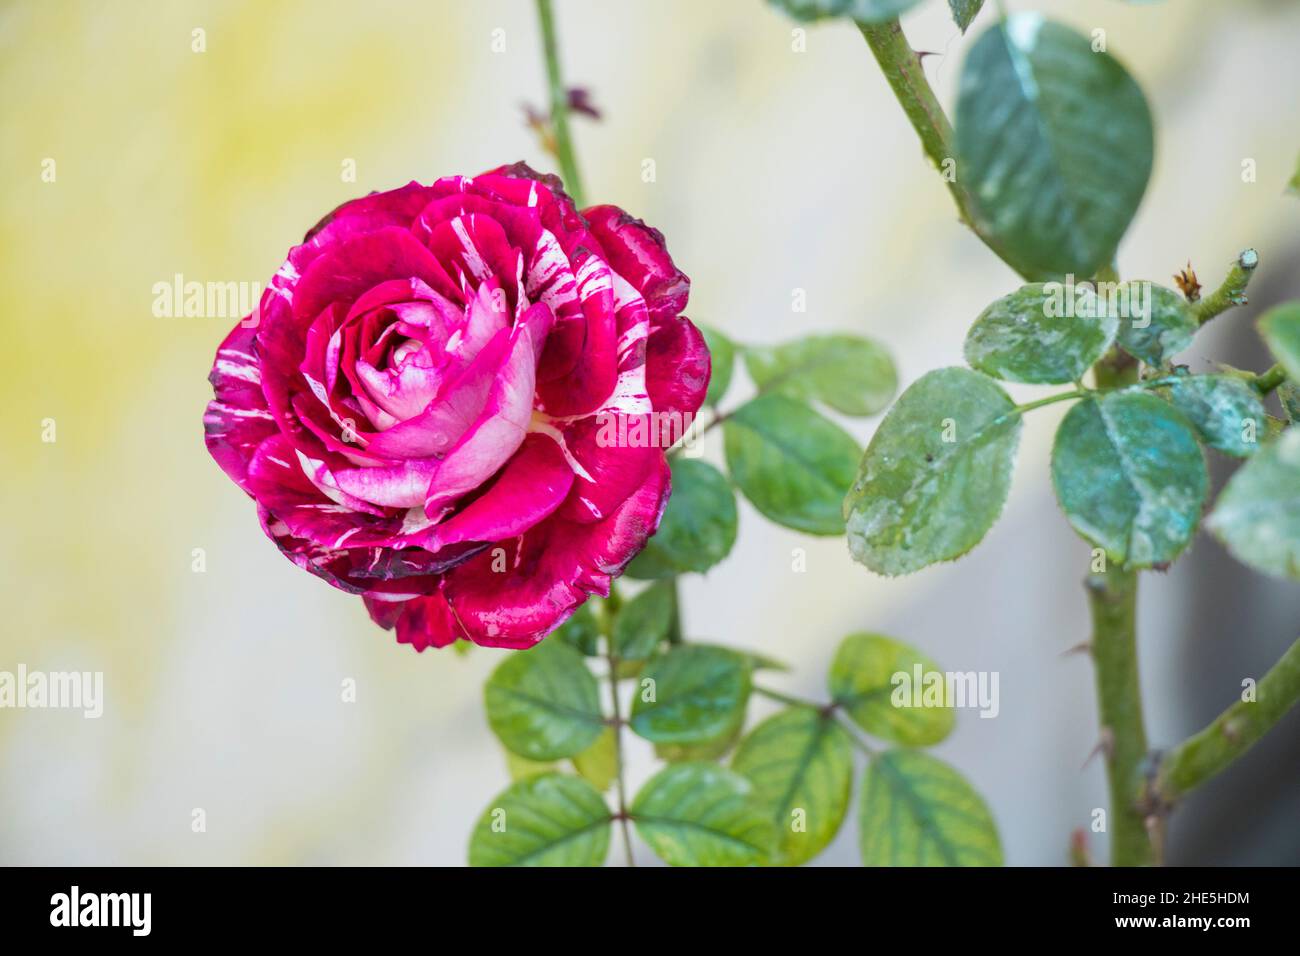 immagine del fiore di rosa abra abradata Foto Stock